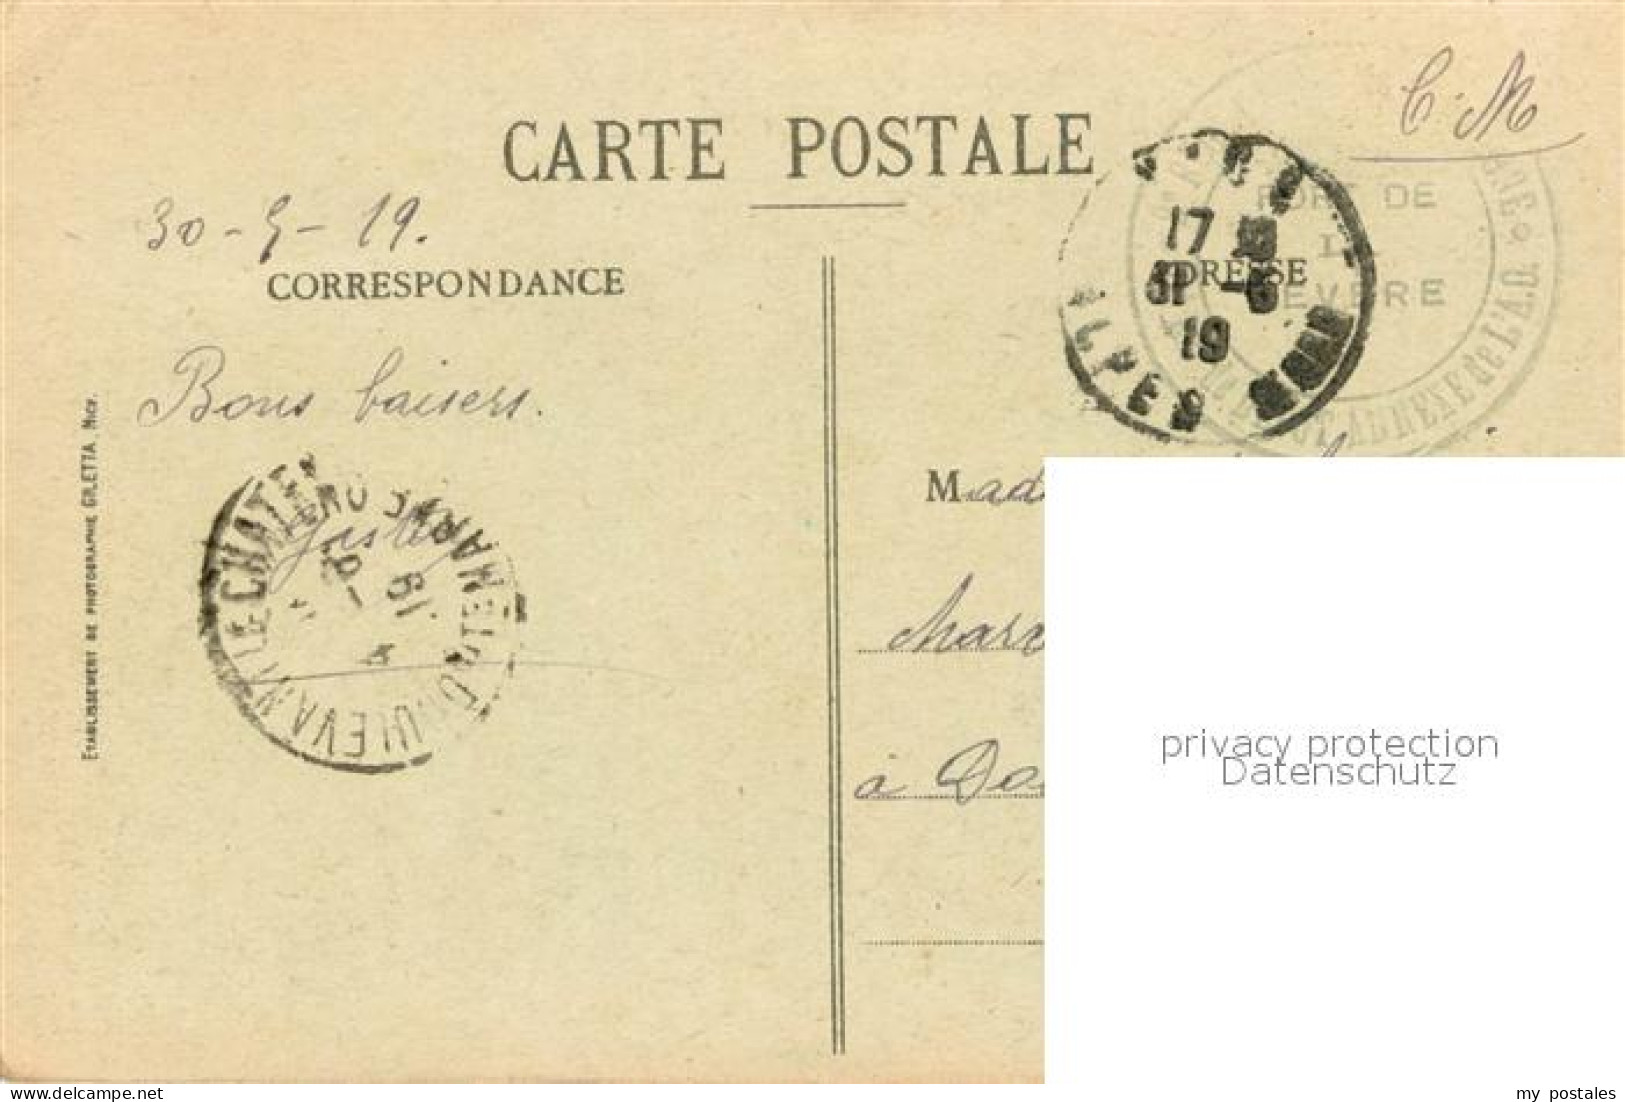 73619451 Monaco Palais Du Prince Carabiniers Garde D Honneur Monaco - Otros & Sin Clasificación